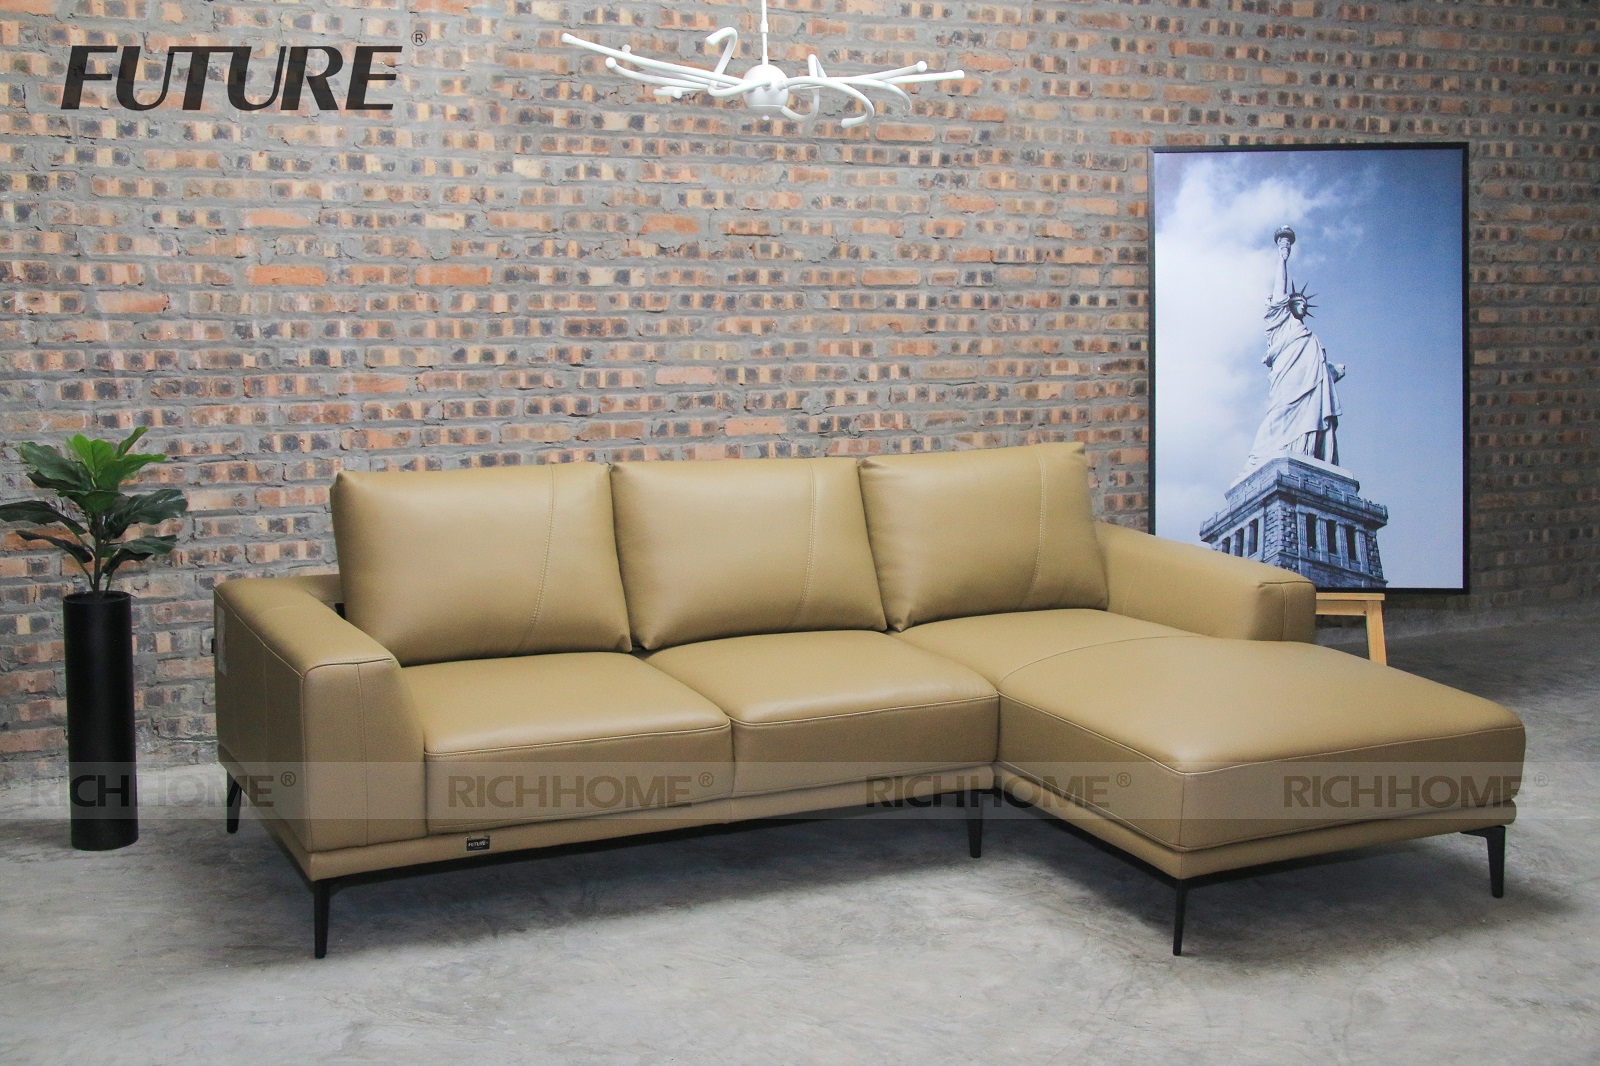 Tổng hợp các mẫu sofa đẹp 2020 dành cho văn phòng - Ảnh 3